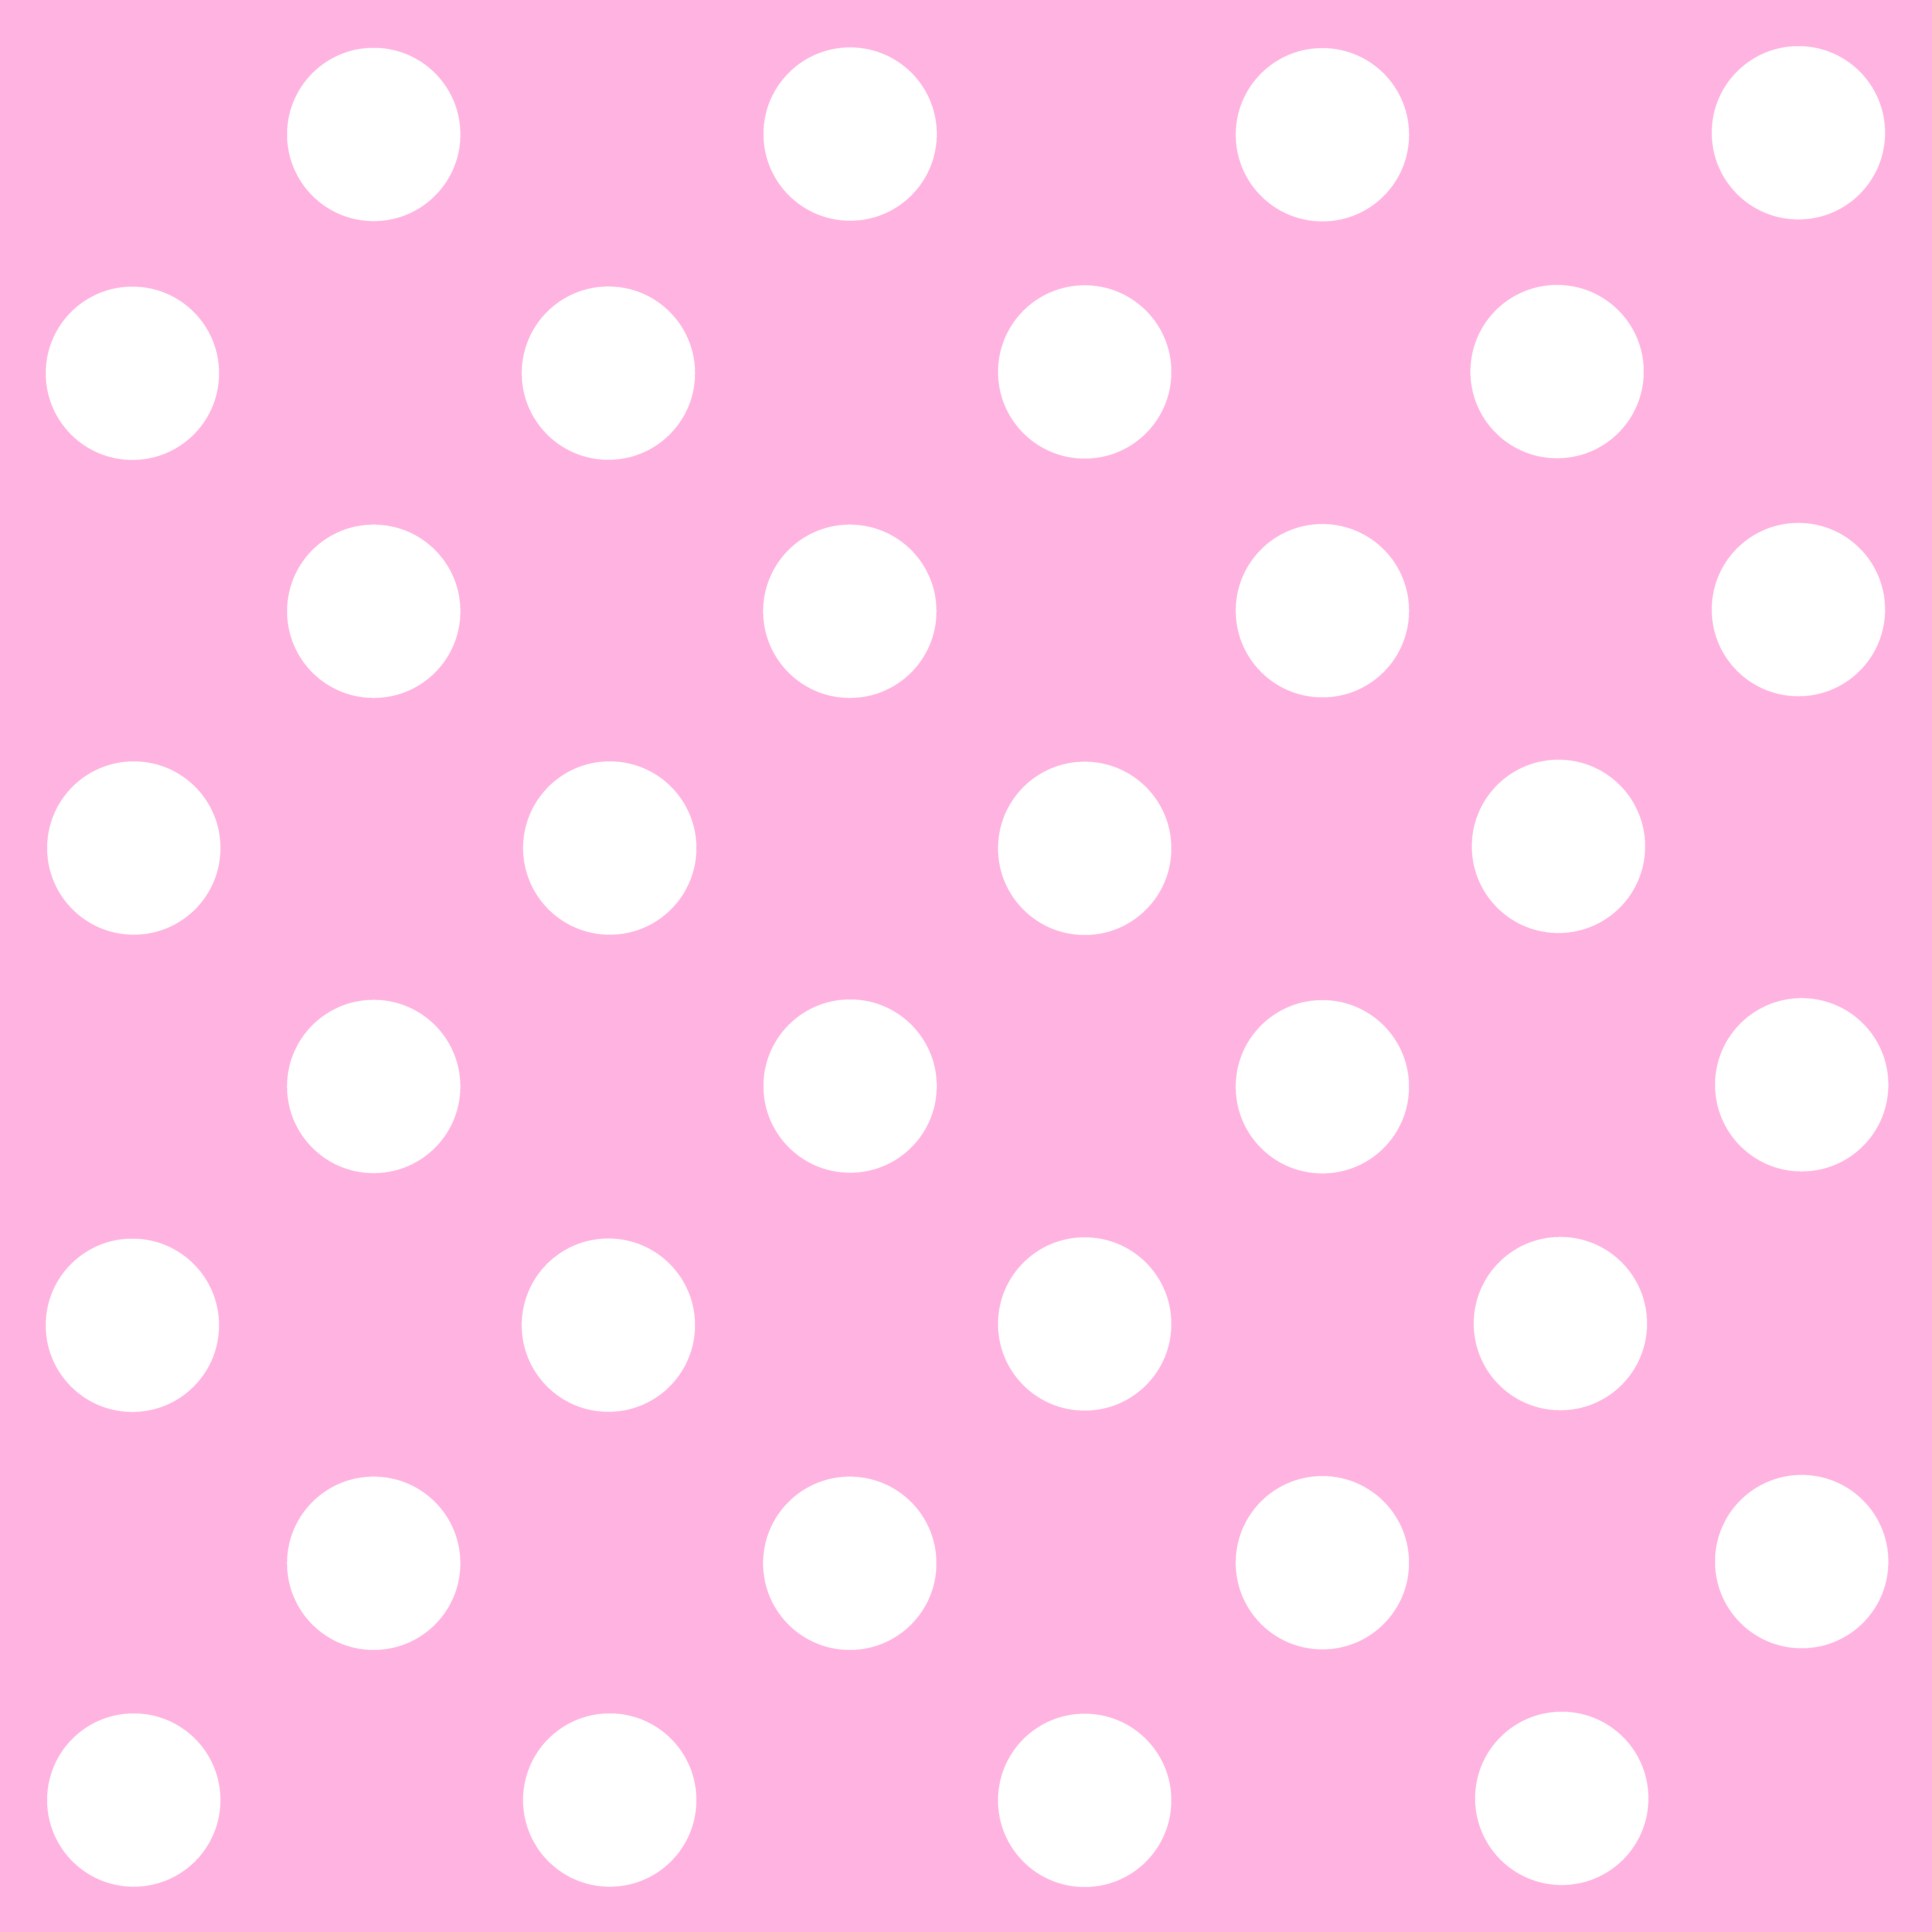 분홍색과 흰색 벽지,무늬,분홍,폴카 도트,보라색,디자인 (#140519) - WallpaperUse